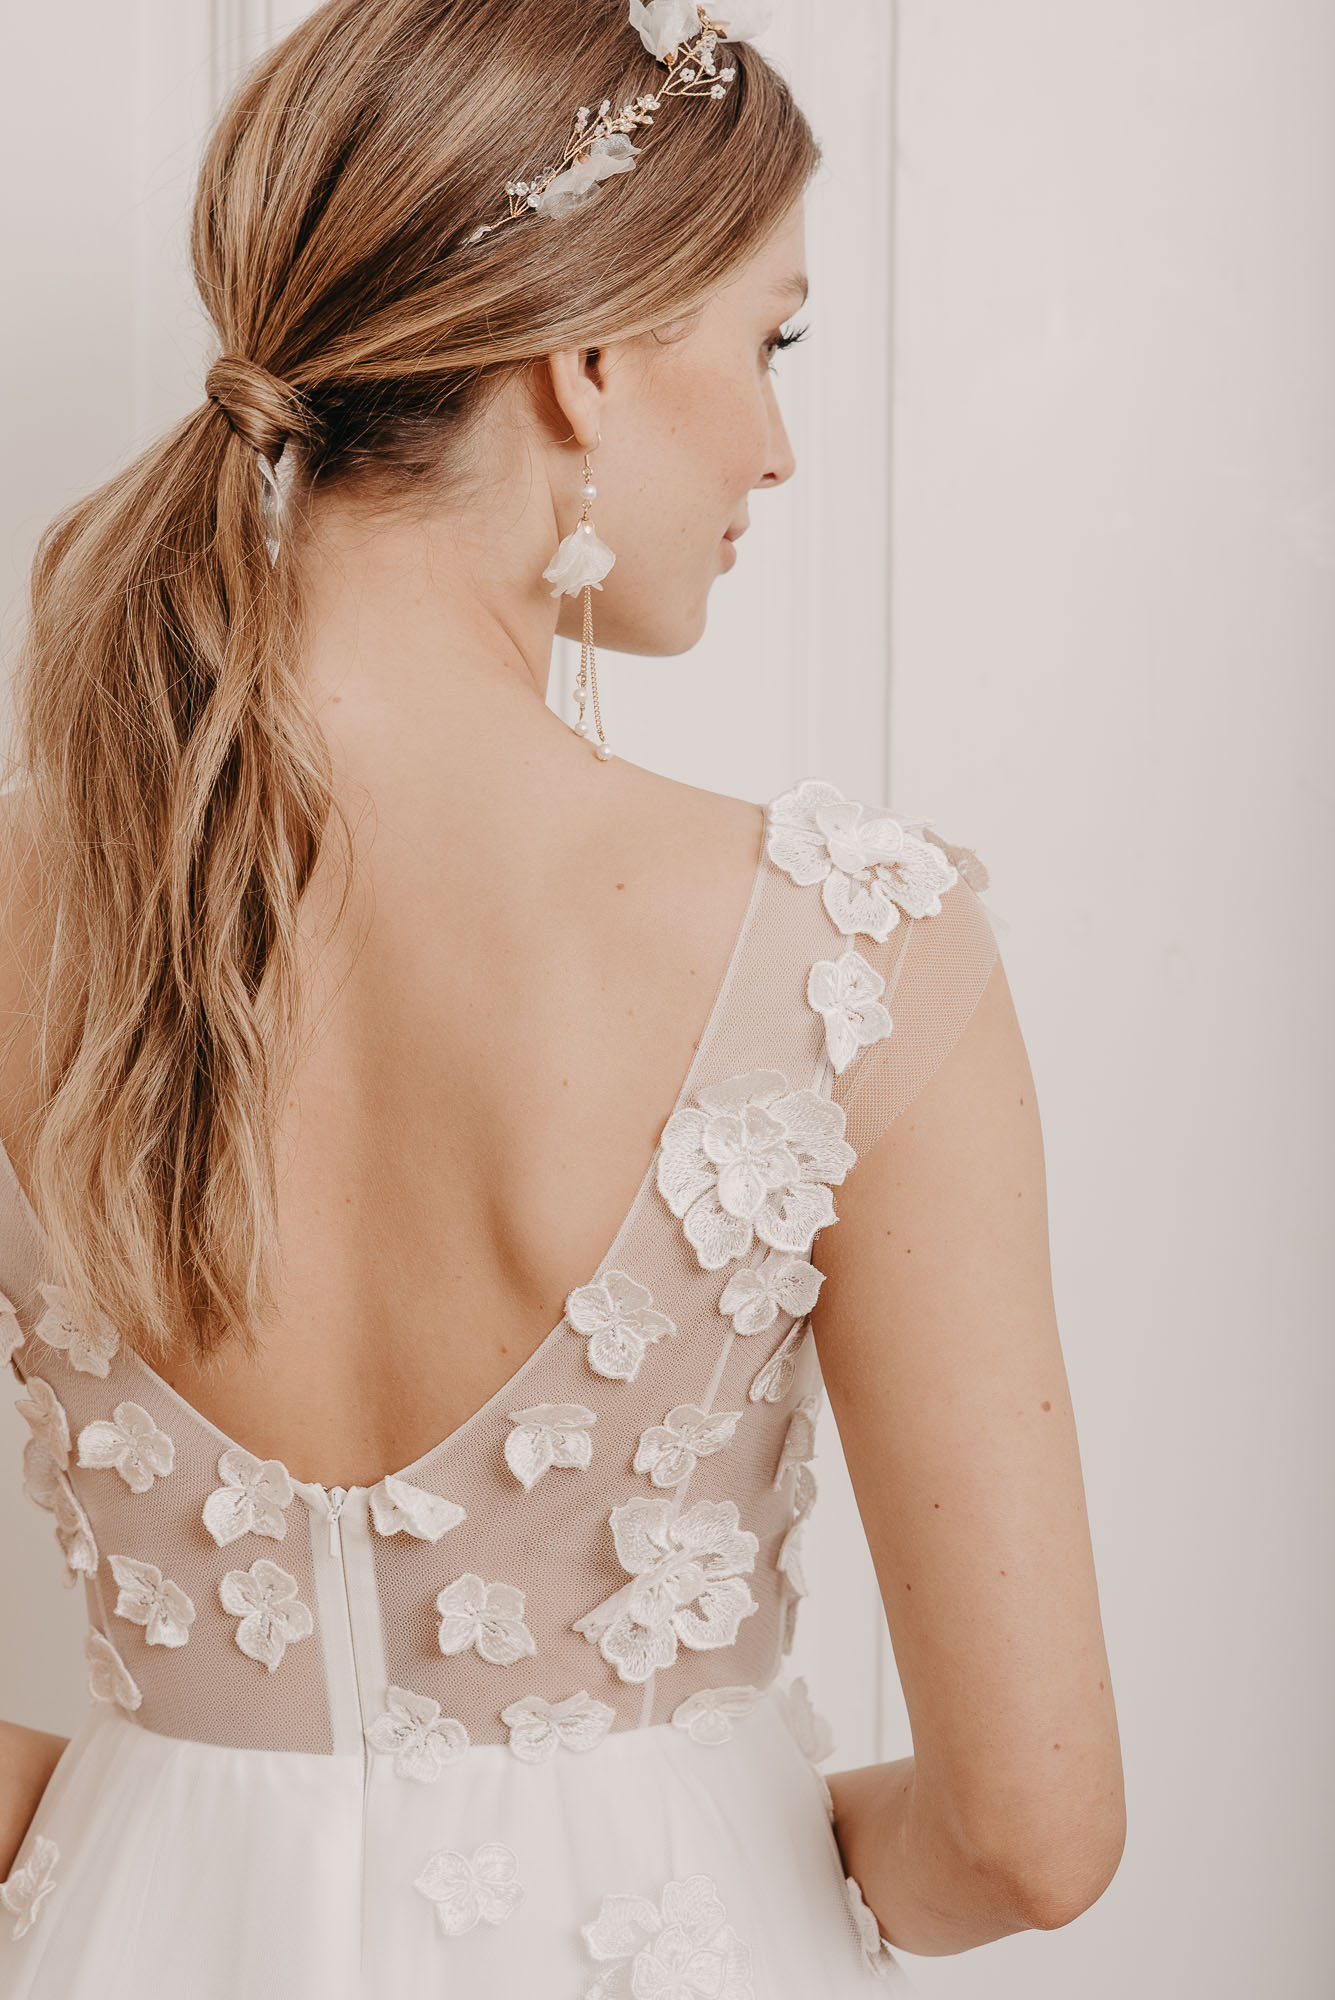 Lovage Brautkleid Rückenausschnitt - Brautmode von Oonce